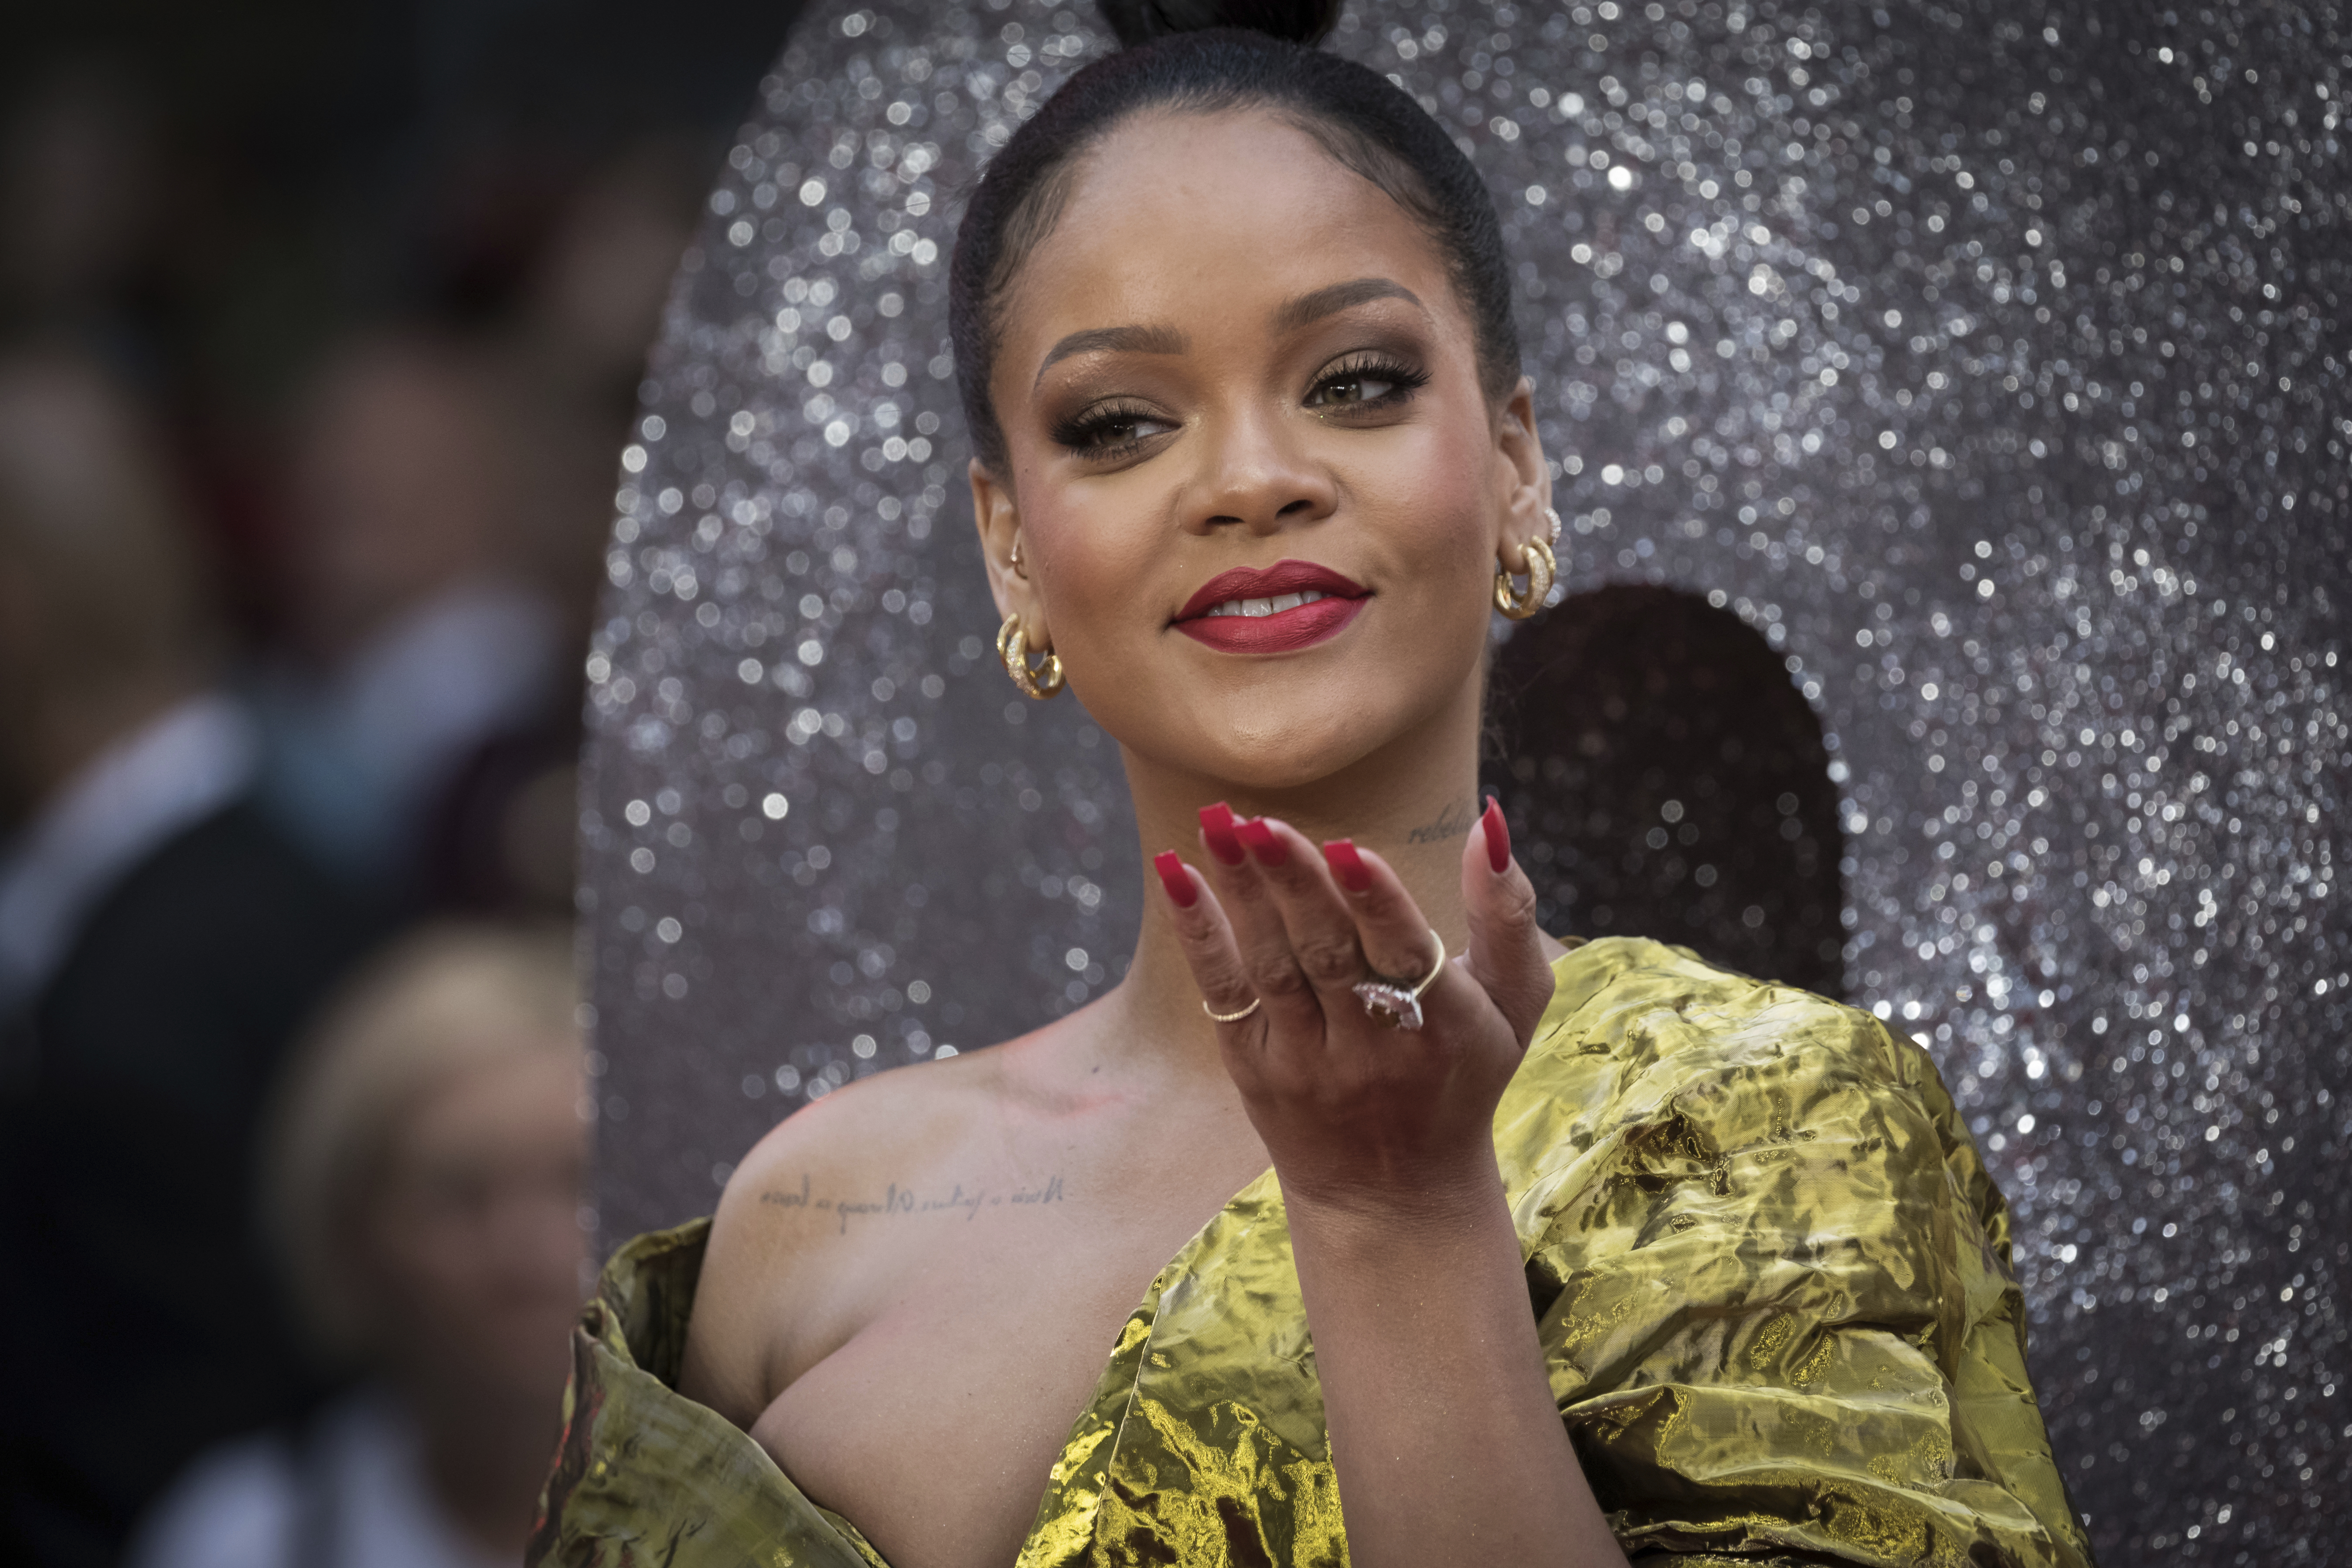 Rihanna elnézést kért, amiért a fehérnemű-bemutatóján részlet hangzott el egy muszlim szent szövegből